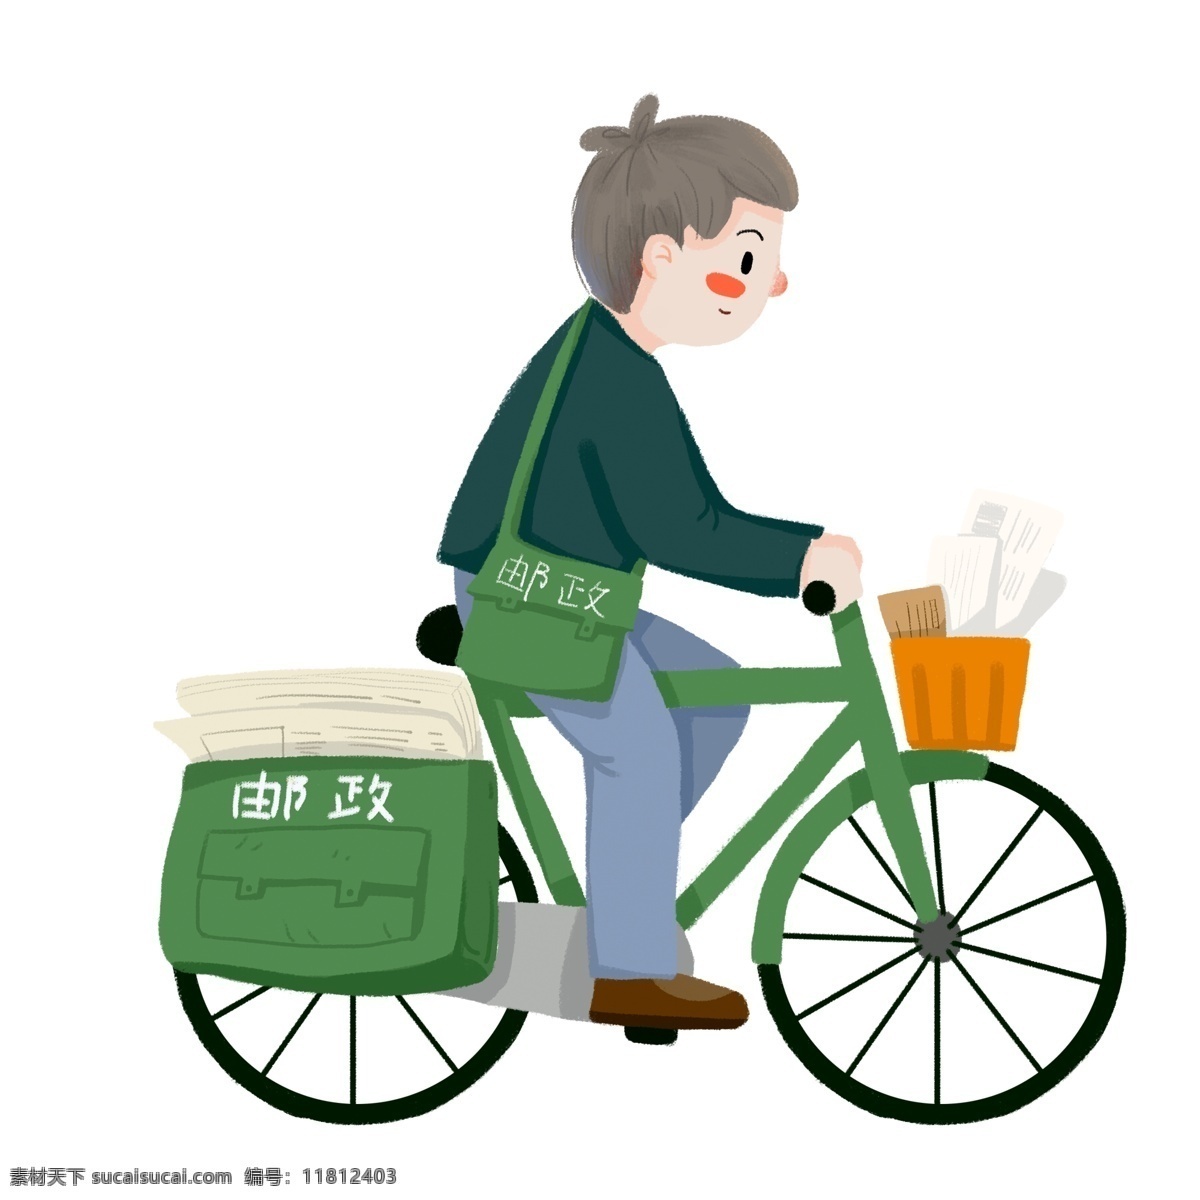 骑 自行车 送 信件 邮递员 卡通 元素 骑自行车 送信件